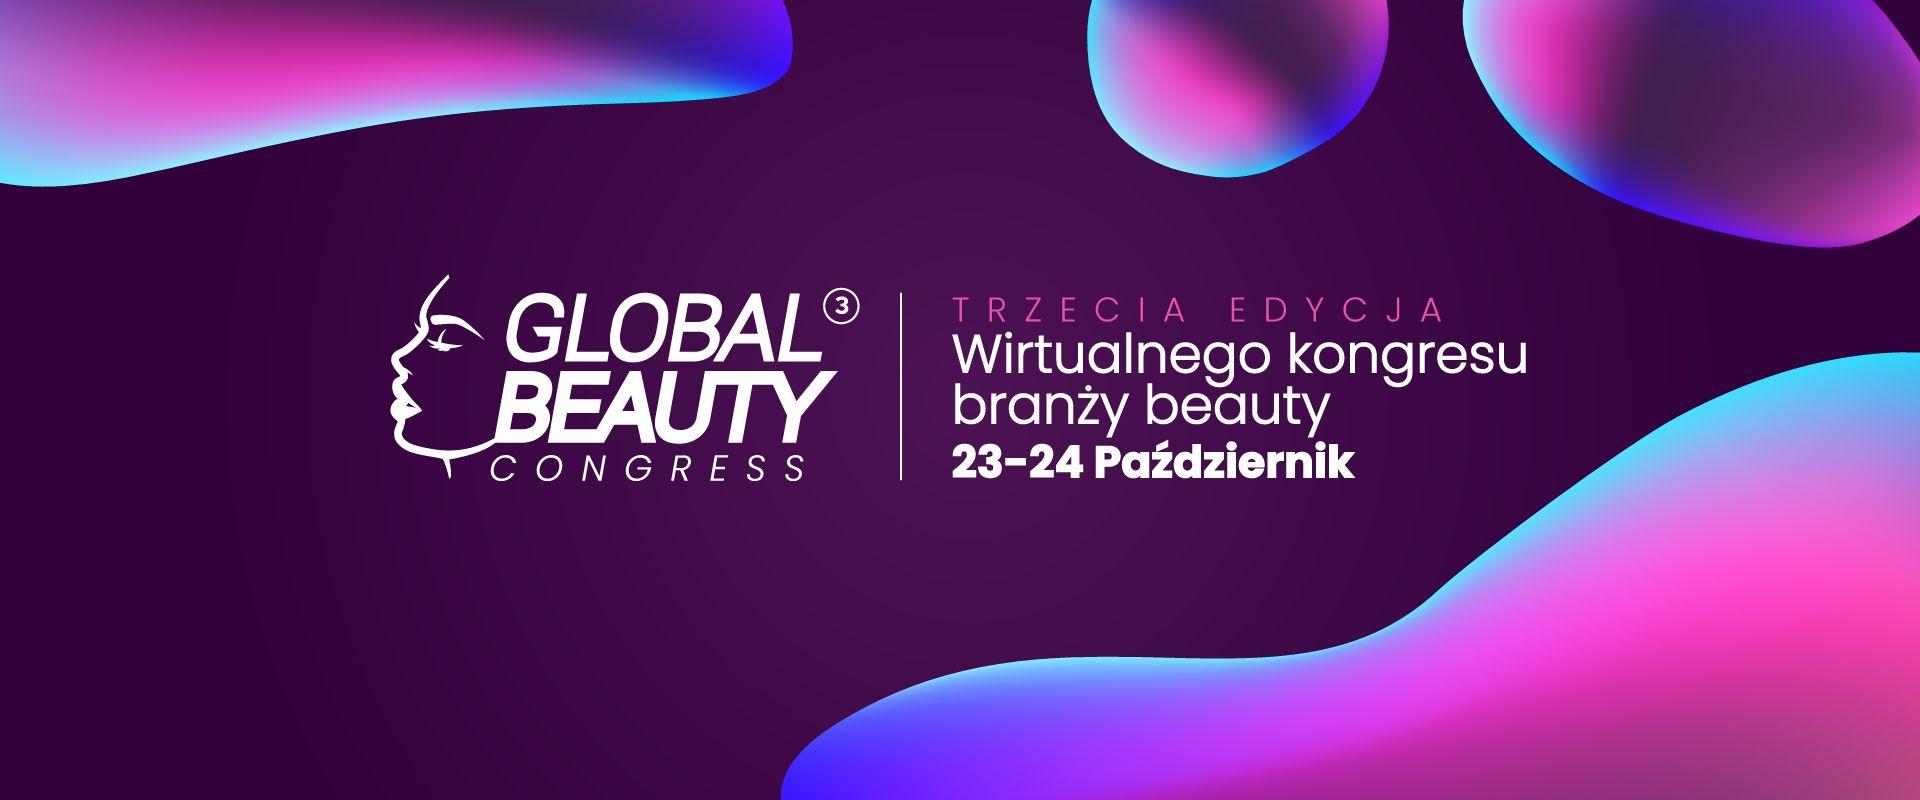 Global Beauty Congress - spotkanie ekspertów kosmetologii estetycznej